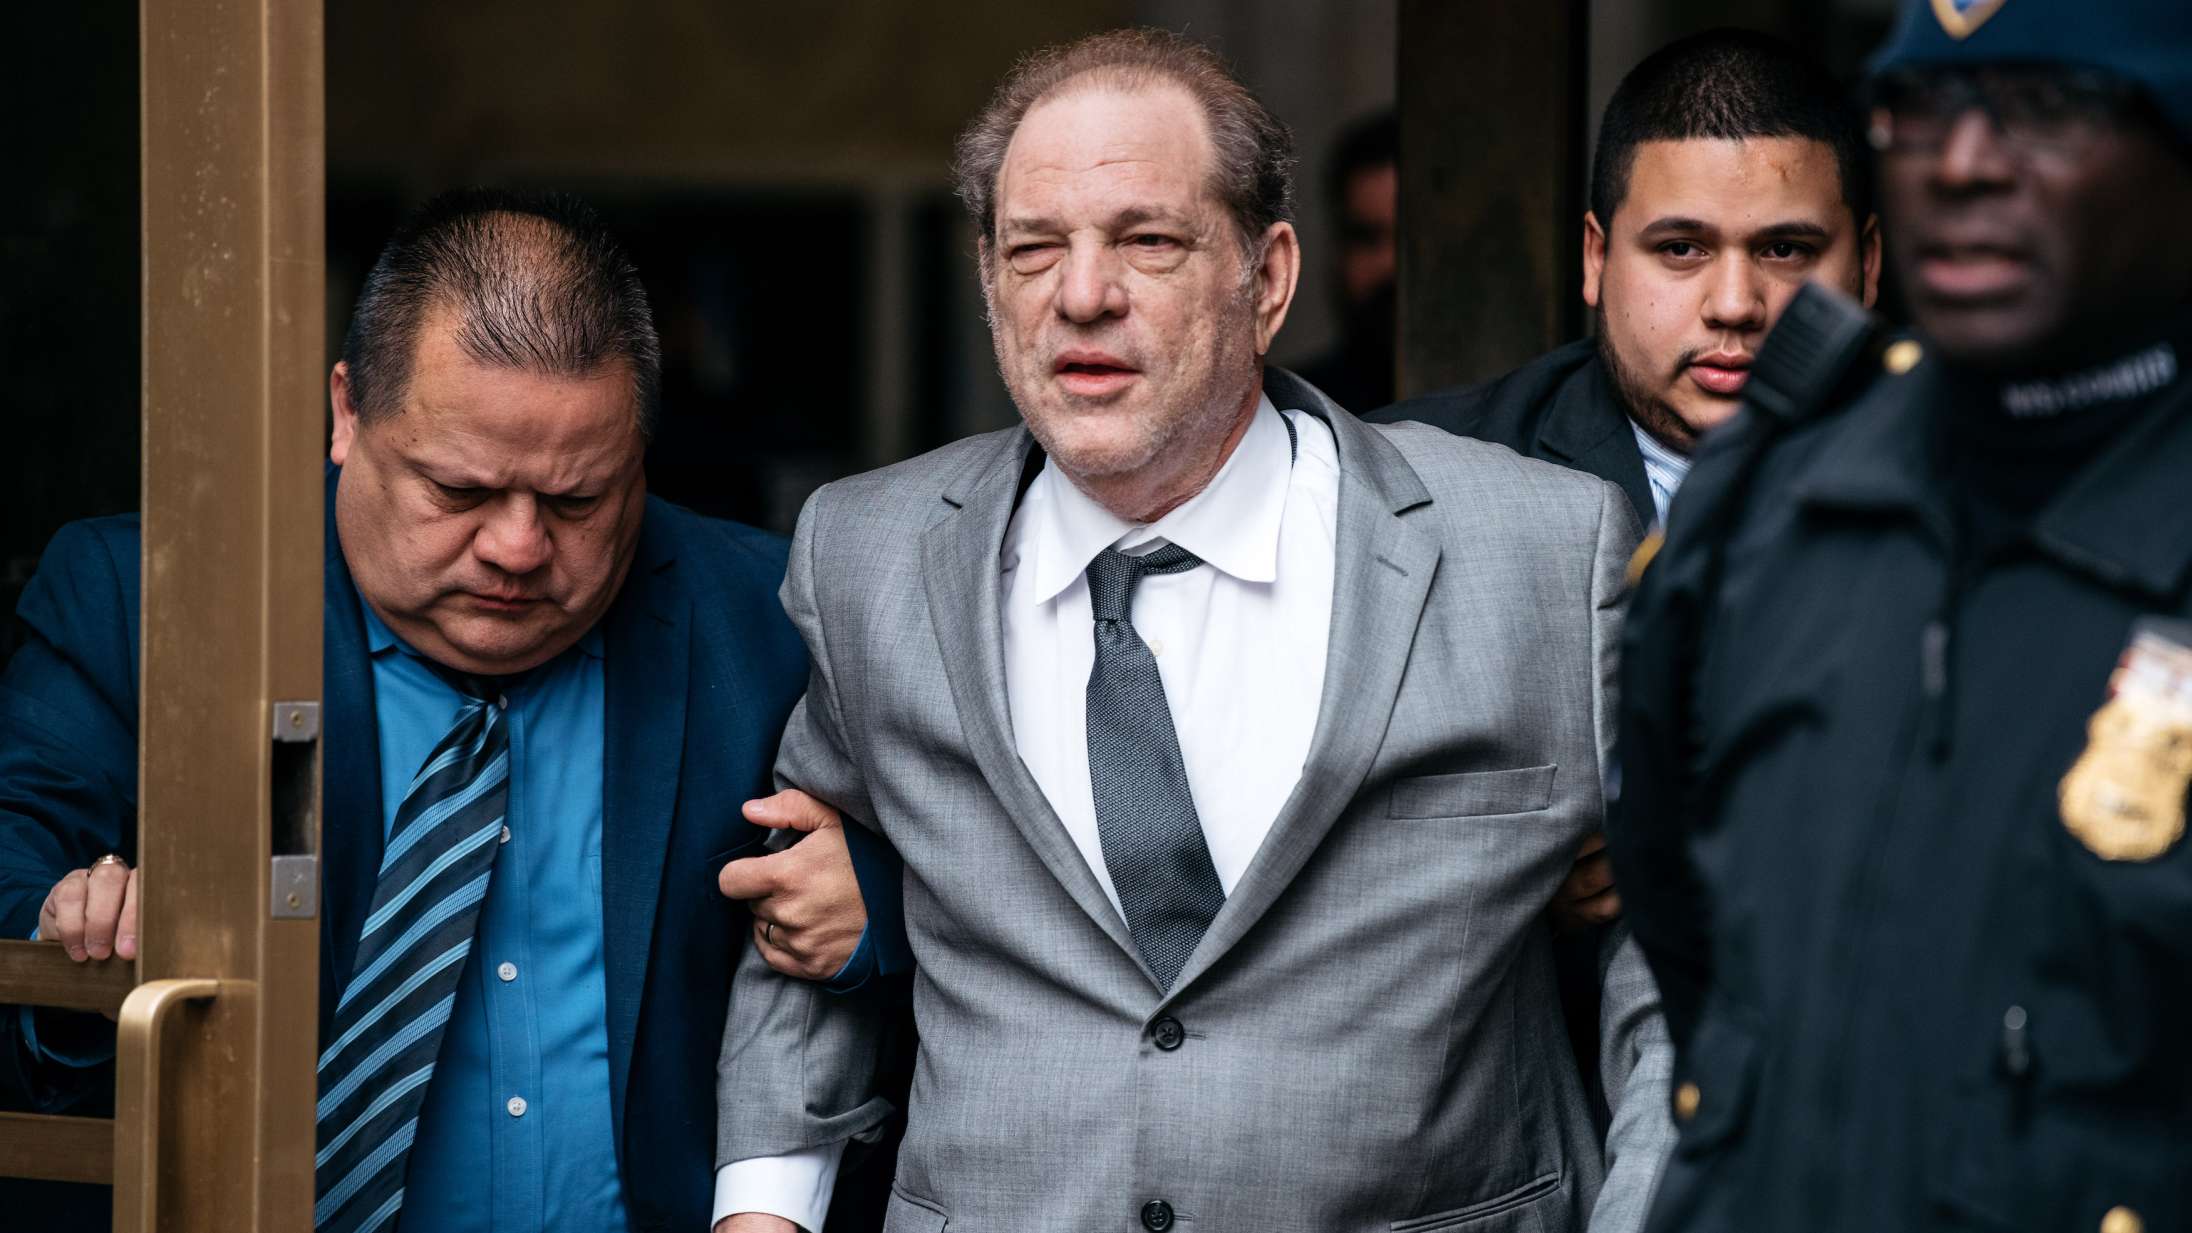 Harvey Weinstein kendt skyldig i voldtægt og seksuelt overgreb